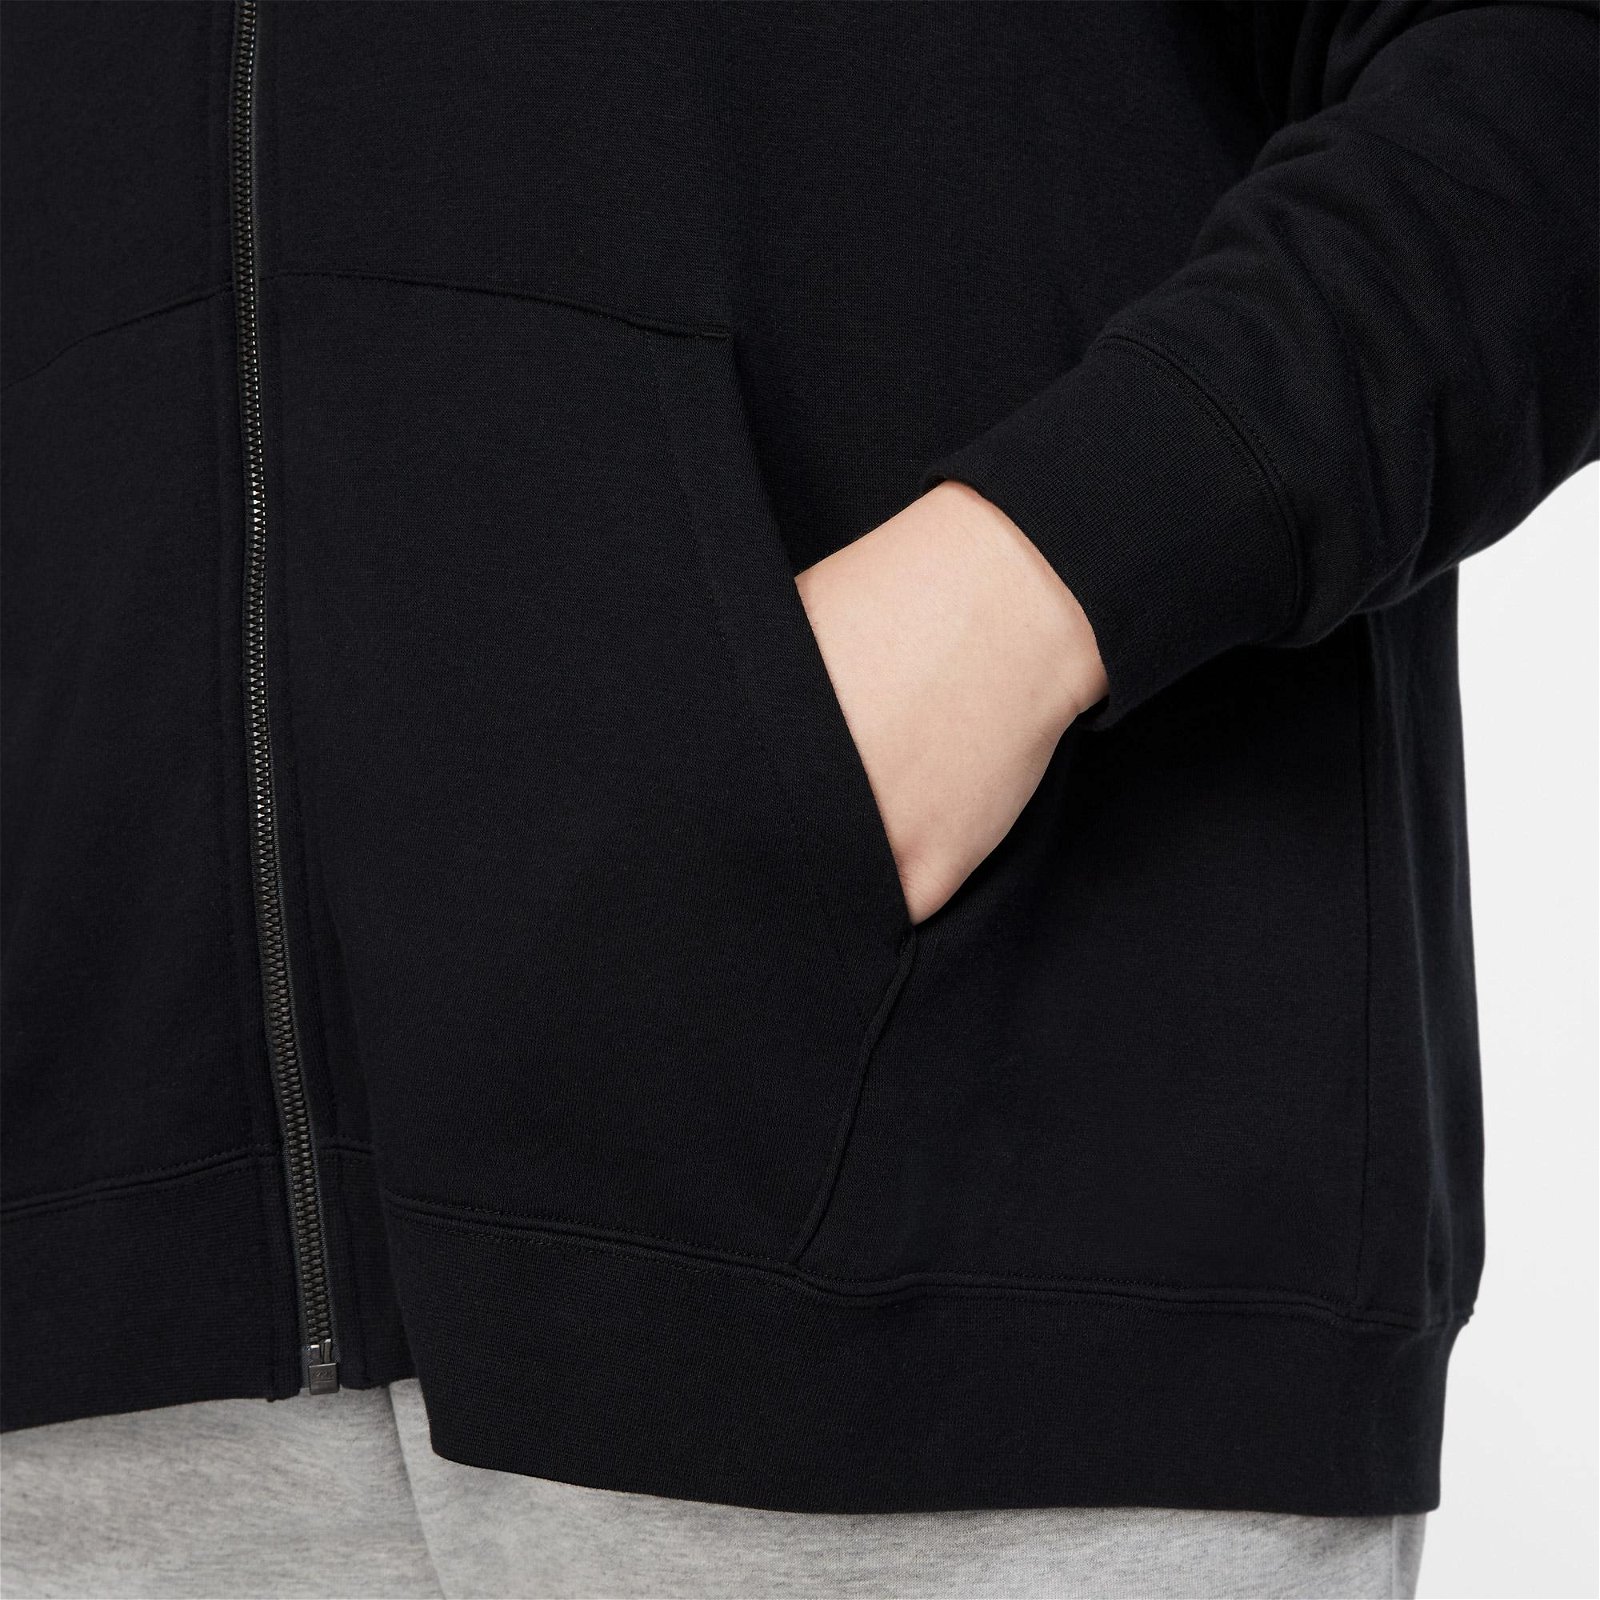 Nike Sportswear Essential Flc Full-Zip Hdy Büyük Beden Kadın Siyah Sweatshirt